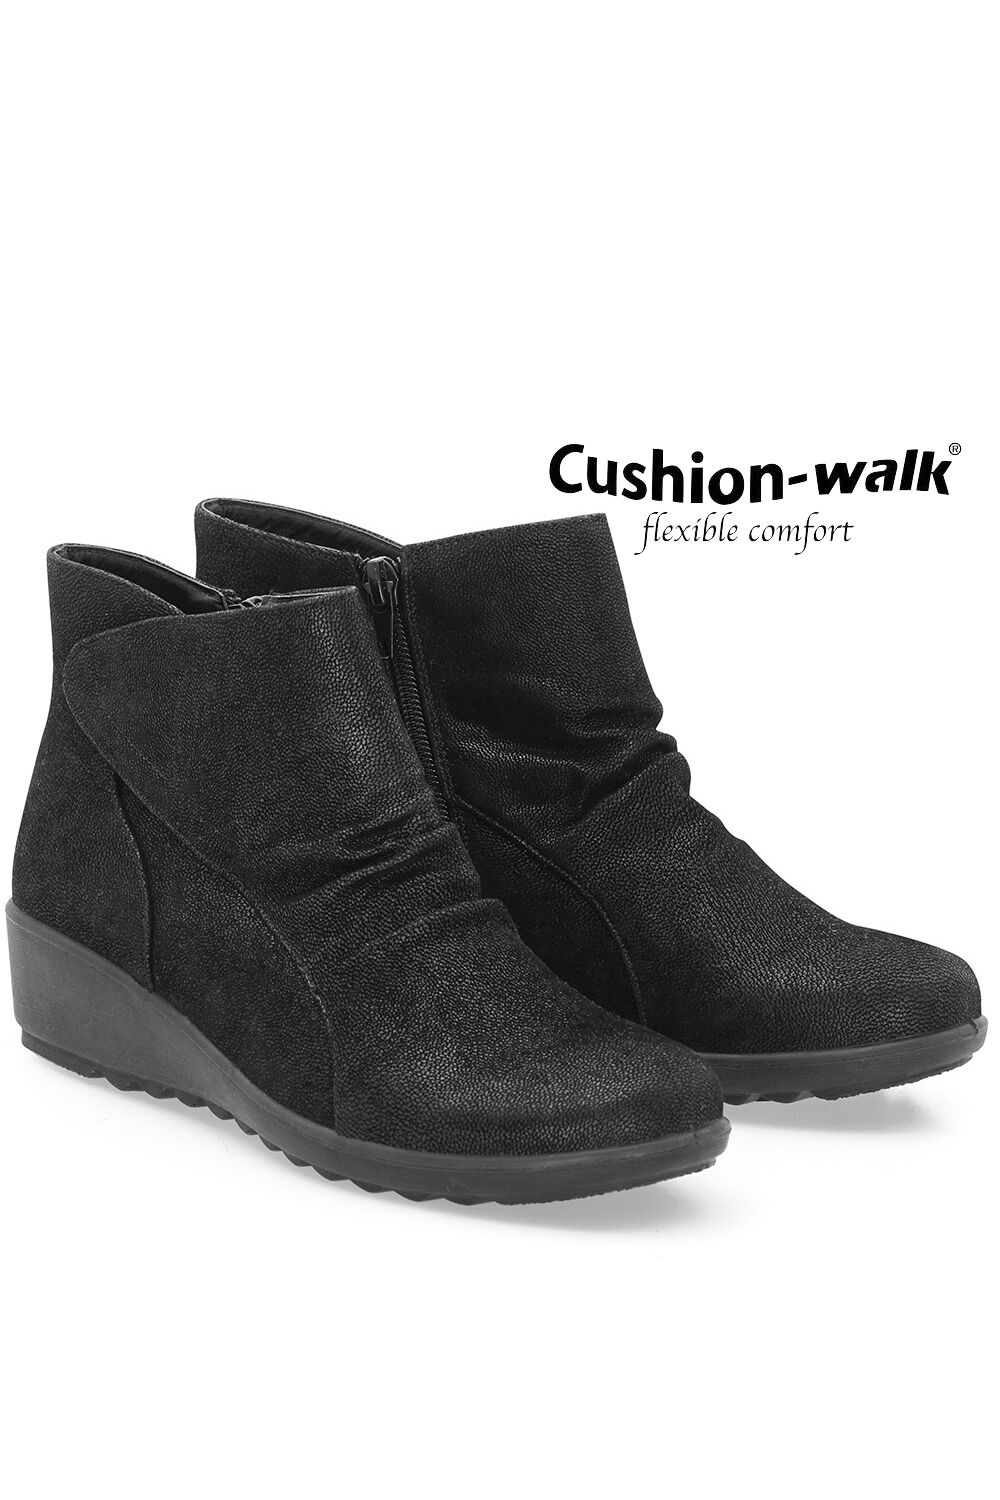 cushion walk shoes ireland